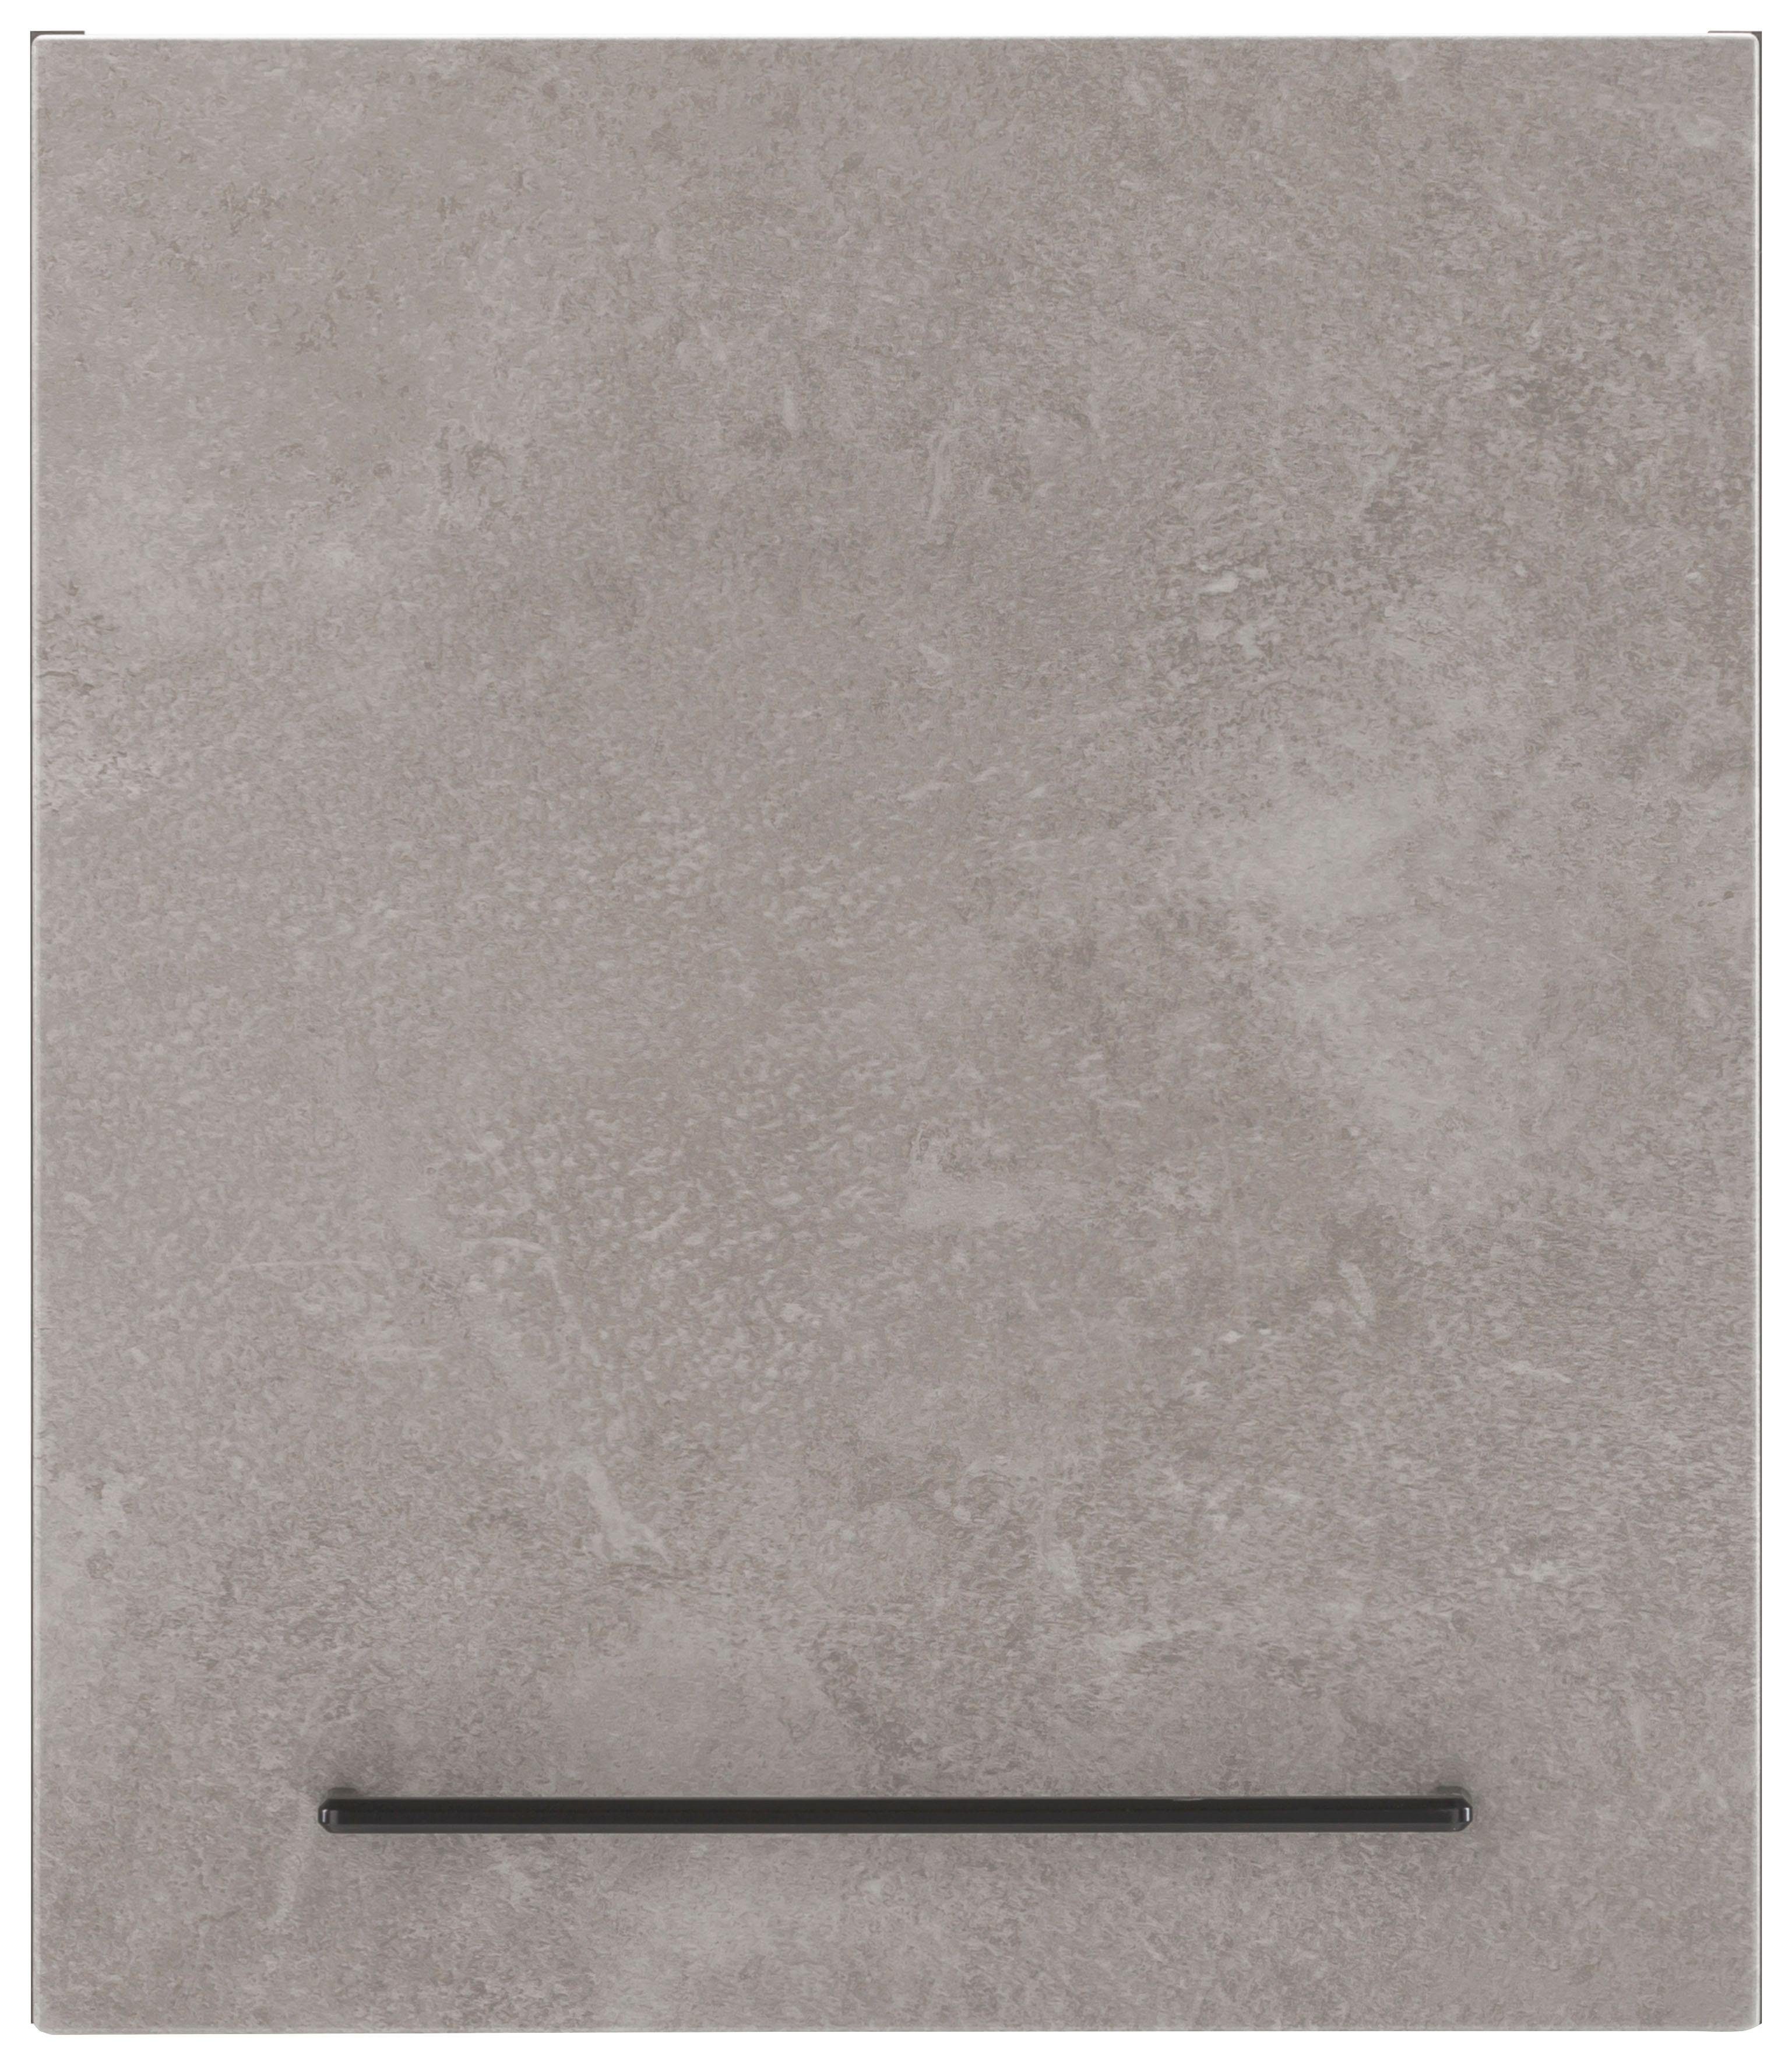 HELD MÖBEL Hängeschrank Tulsa 50 cm breit, 57 cm hoch, 1 Tür, schwarzer Metallgriff, MDF Front betonfarben hell | grafit